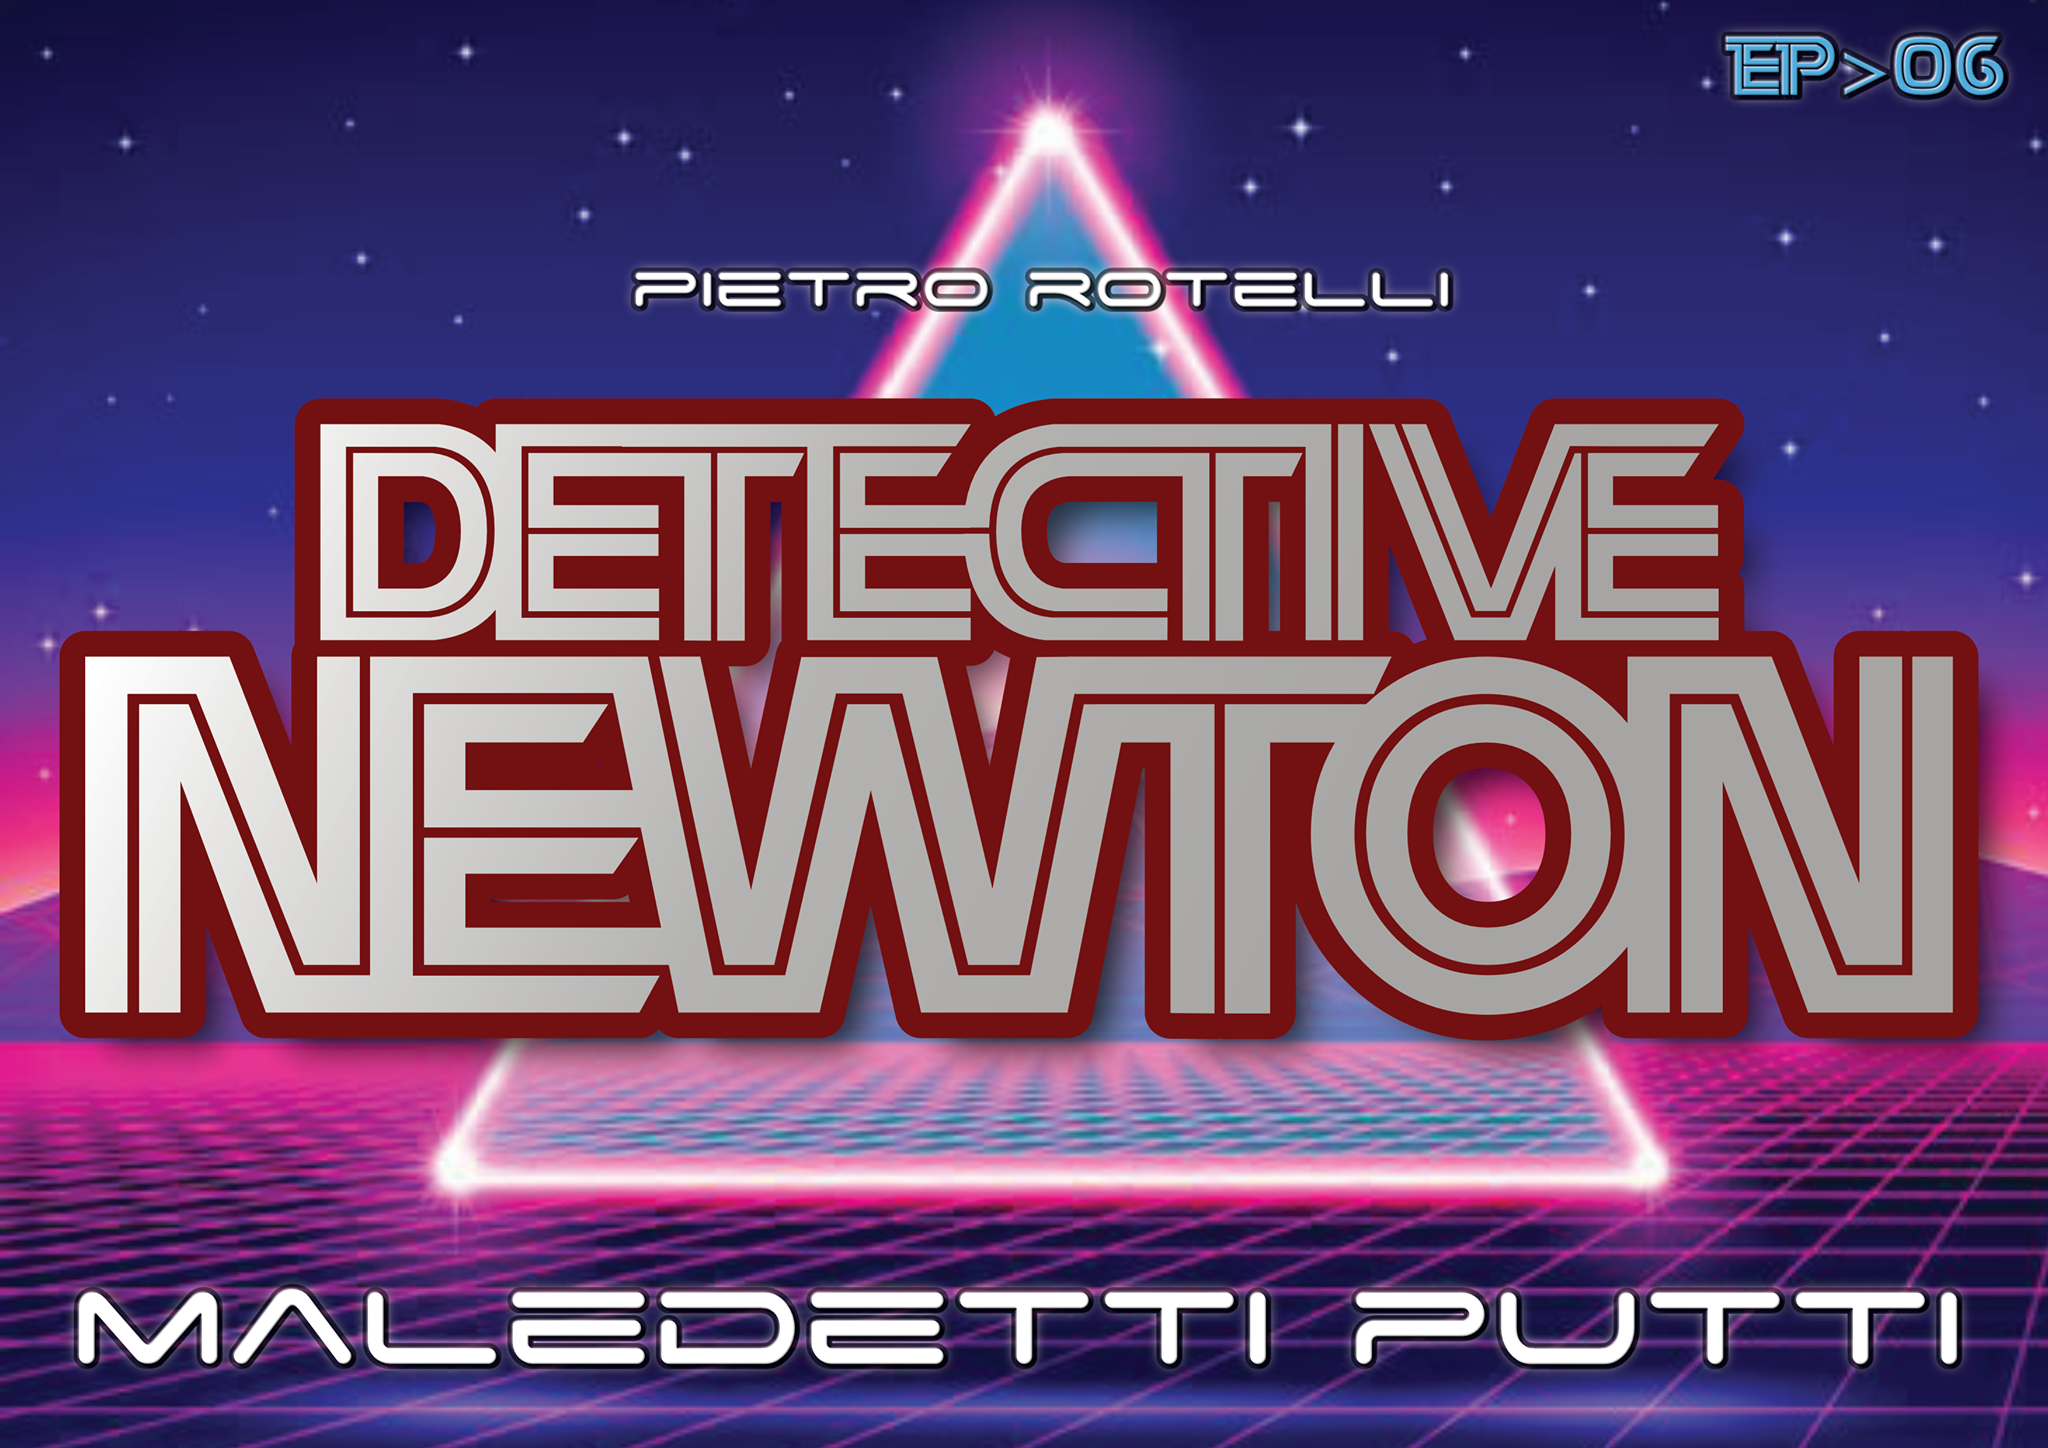 Fabio Zuffanti - Maledetti Putti (Un'Avventura Del Detective Newton Ep.06)